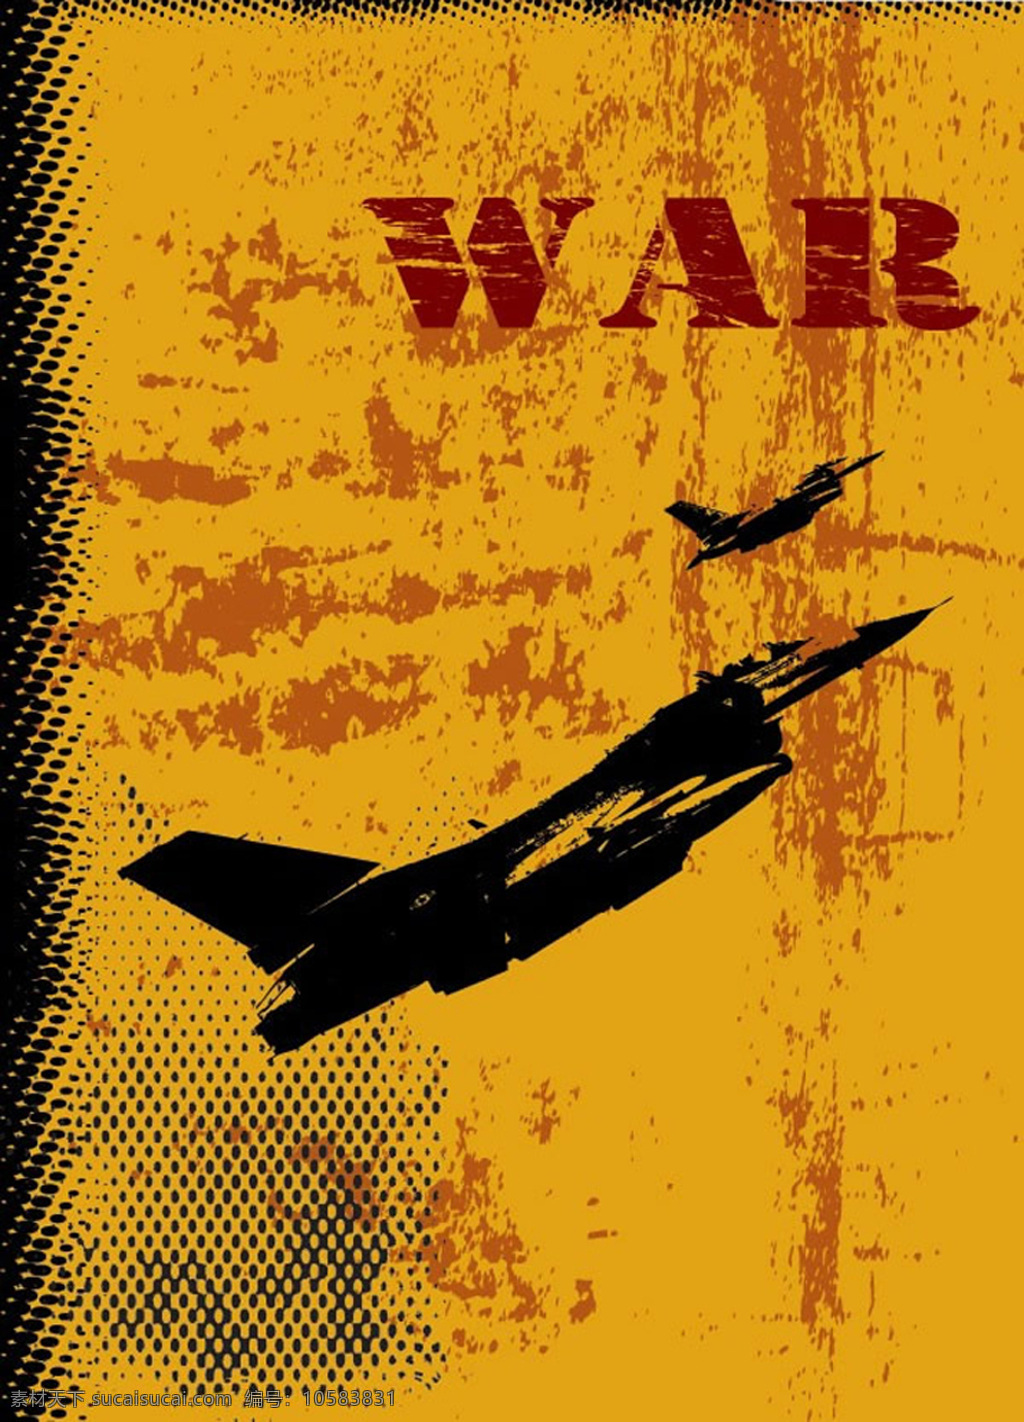 战争 题材 矢量 矢量飞机 战斗机 交通工具 复古风格 网纹 war 矢量图 eps格式 橙色